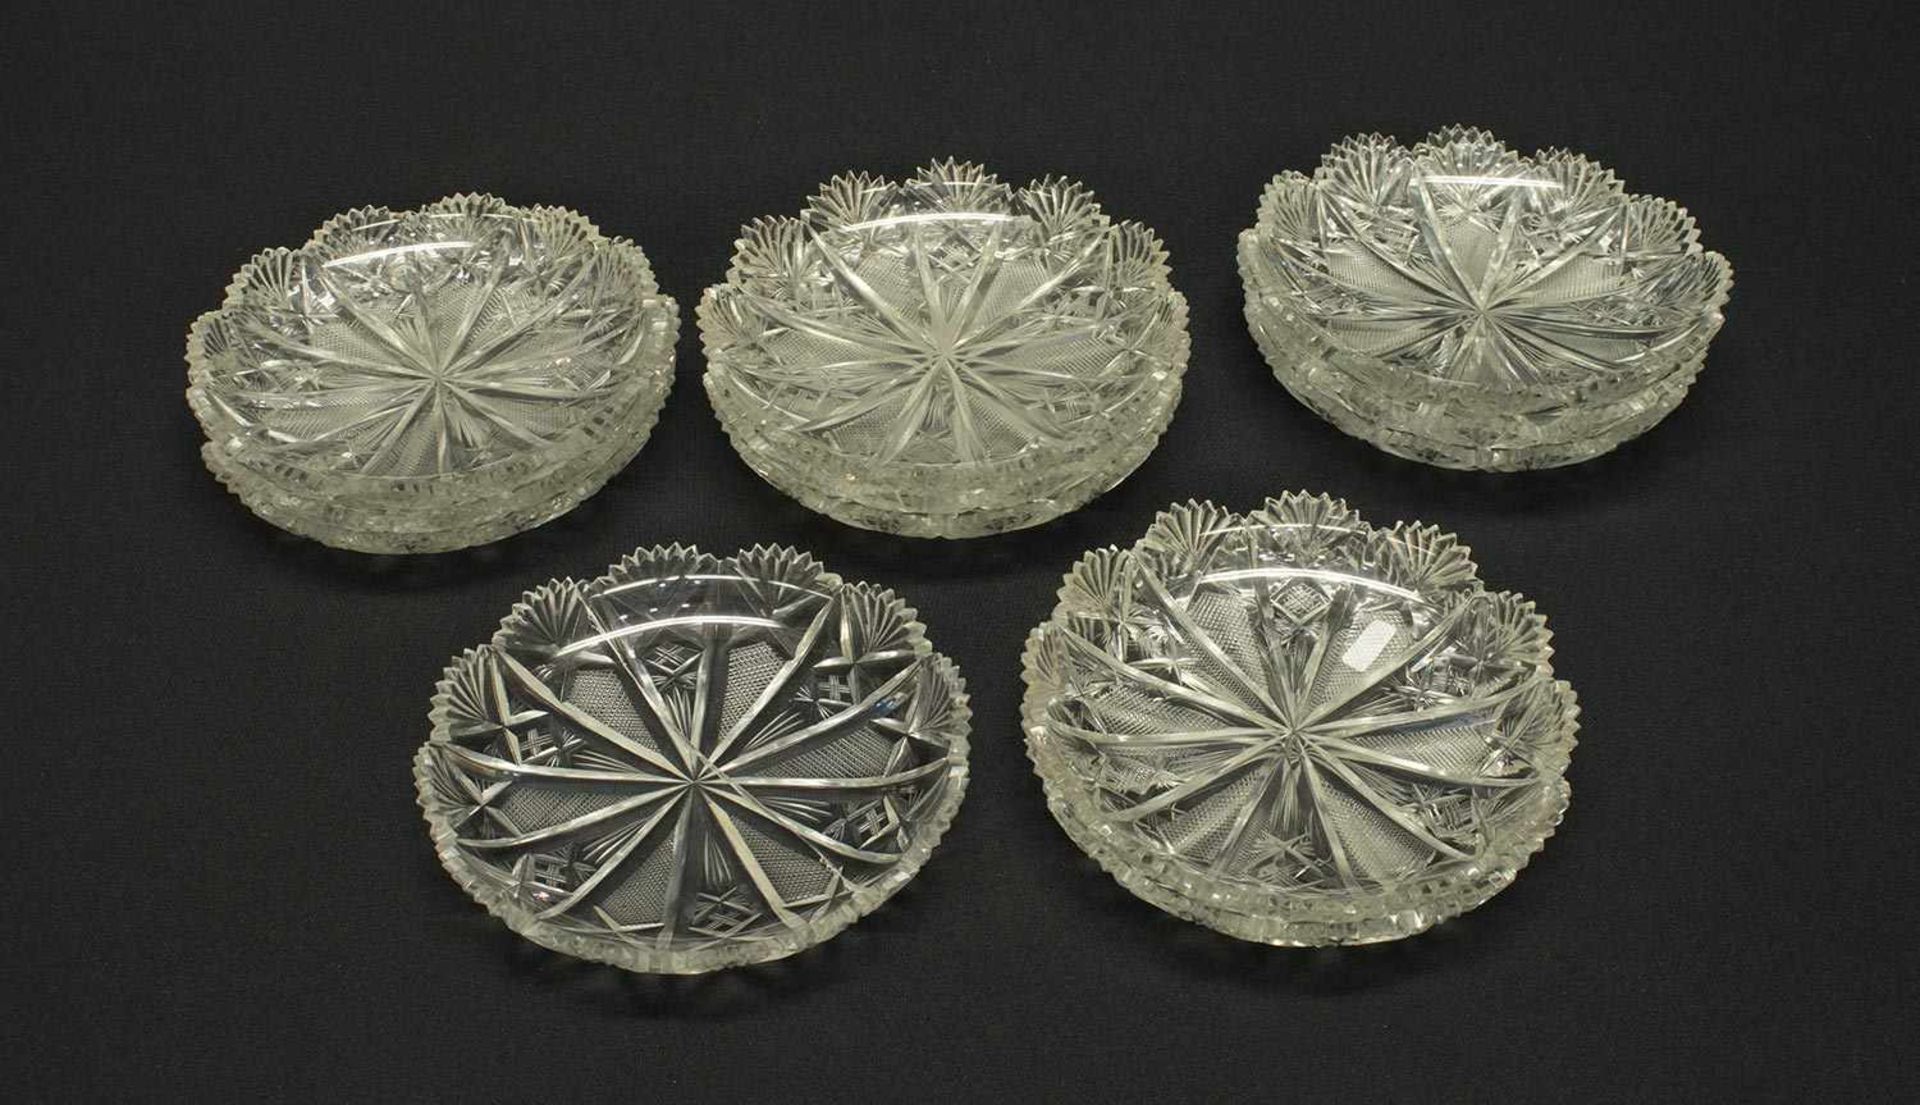 12 Desserschalen1910, Kristallglas mit Ananasschliff, D. 15,5 cm, z.T. minimal bestoßen, 1x alt.